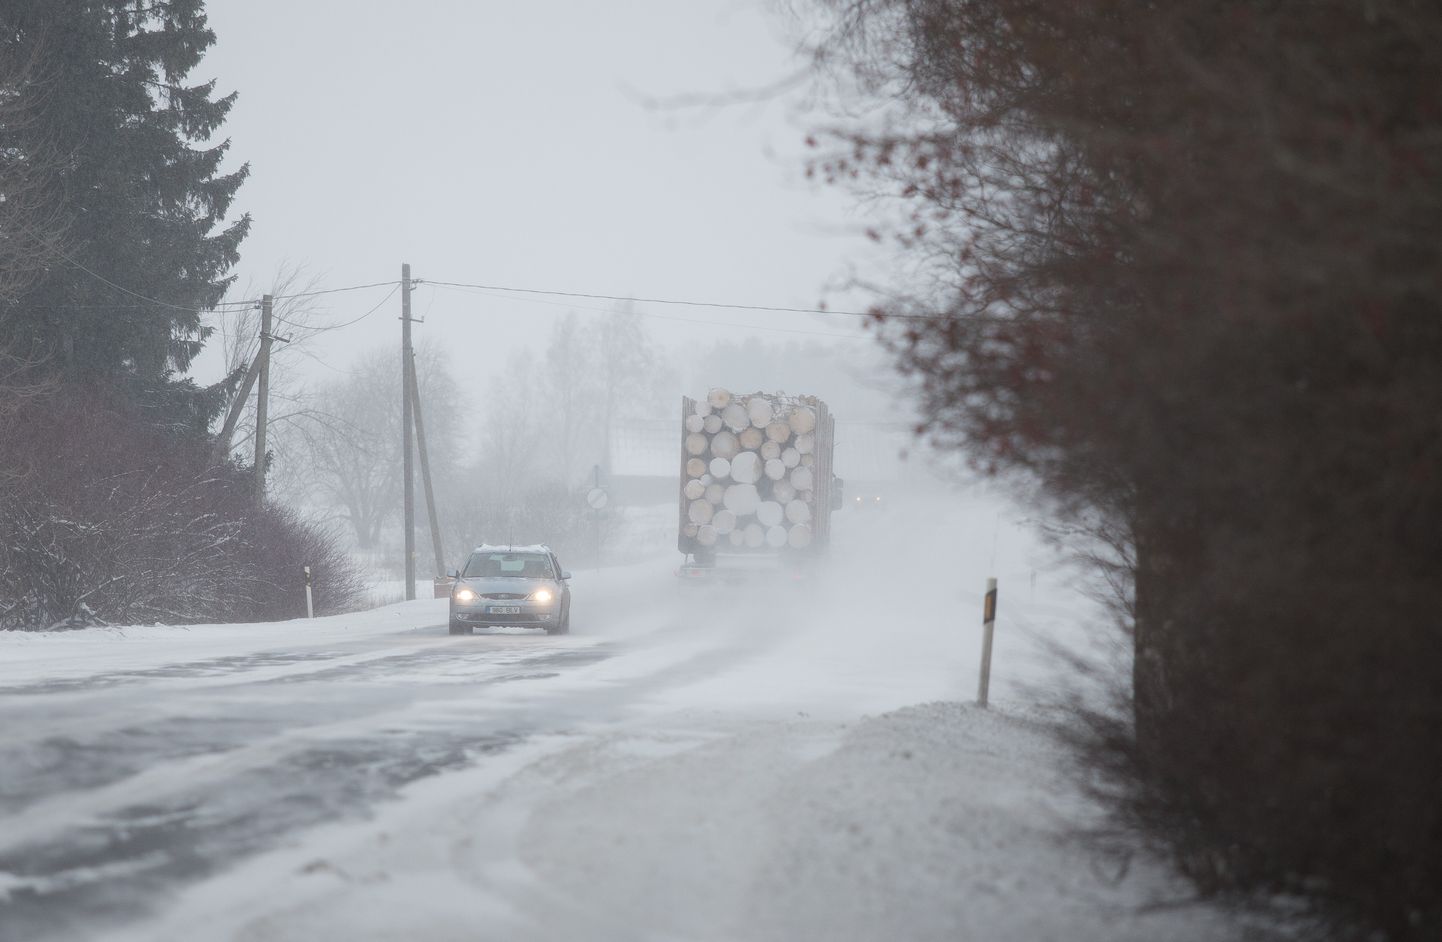 Tänased ilmastikuolud on rasked ning tihe lumesadu muudab teedel liiklemise ohtlikuks.